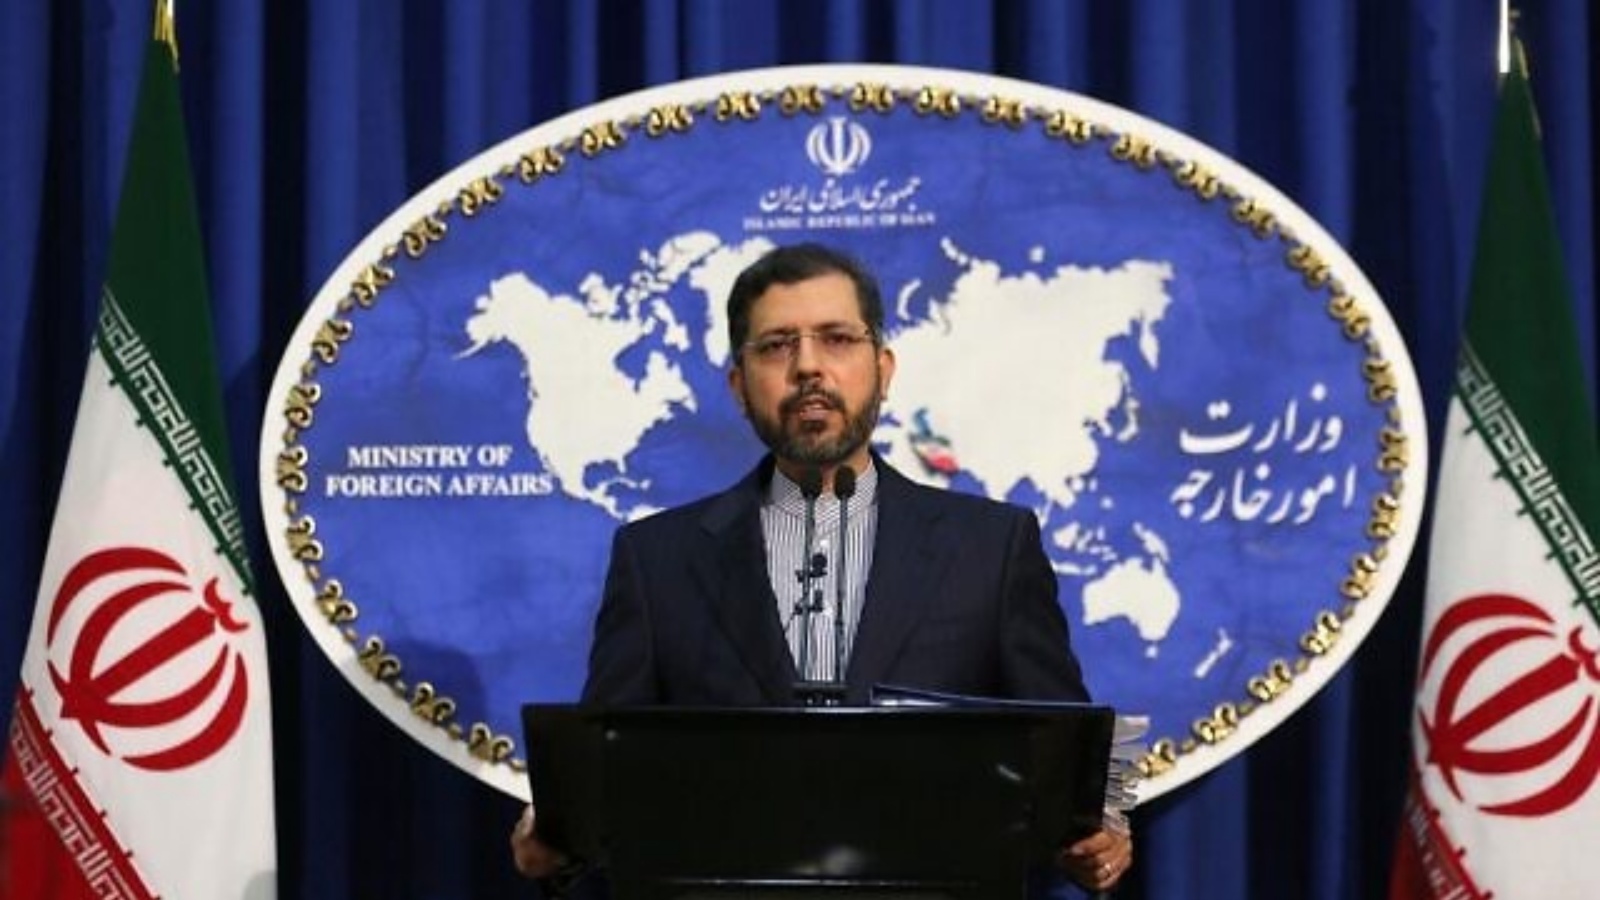 المتحدّث باسم الخارجية الإيرانية، سعيد خطيب زاده، خلال مؤتمر صحفي في طهران. 22 شباط/ فبراير 2021.